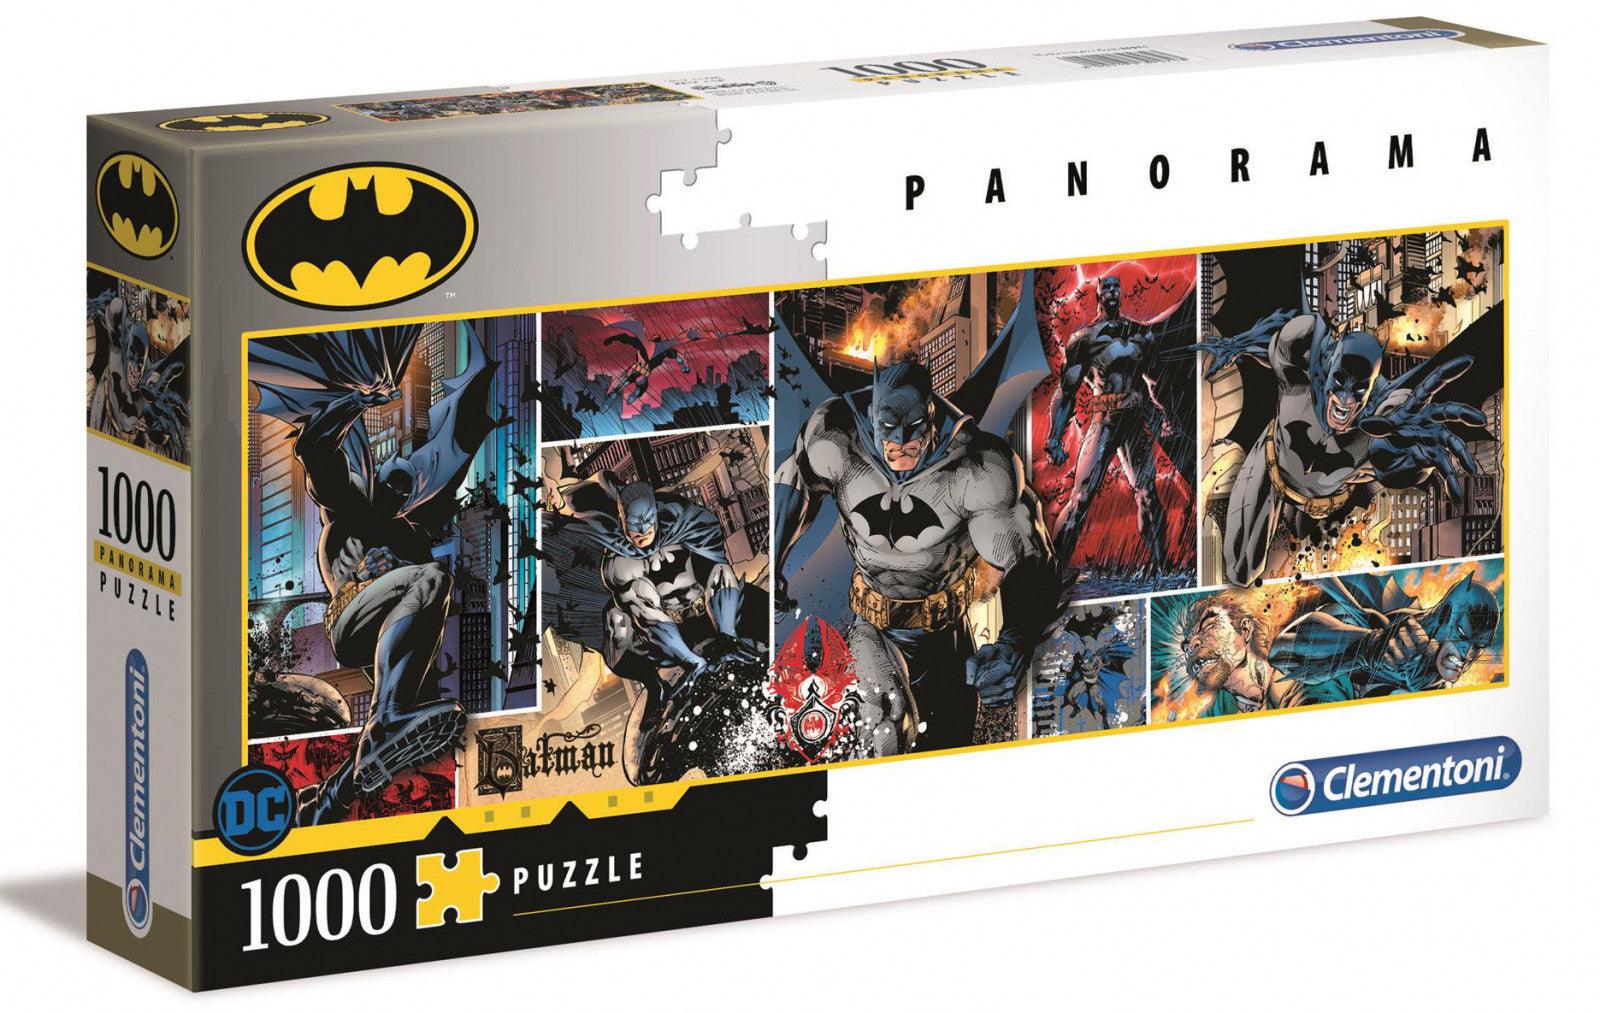 VR-87873 Clementoni Puzzle Batman Panorama Puzzle 1,000 pieces - Clementoni - Titan Pop Culture